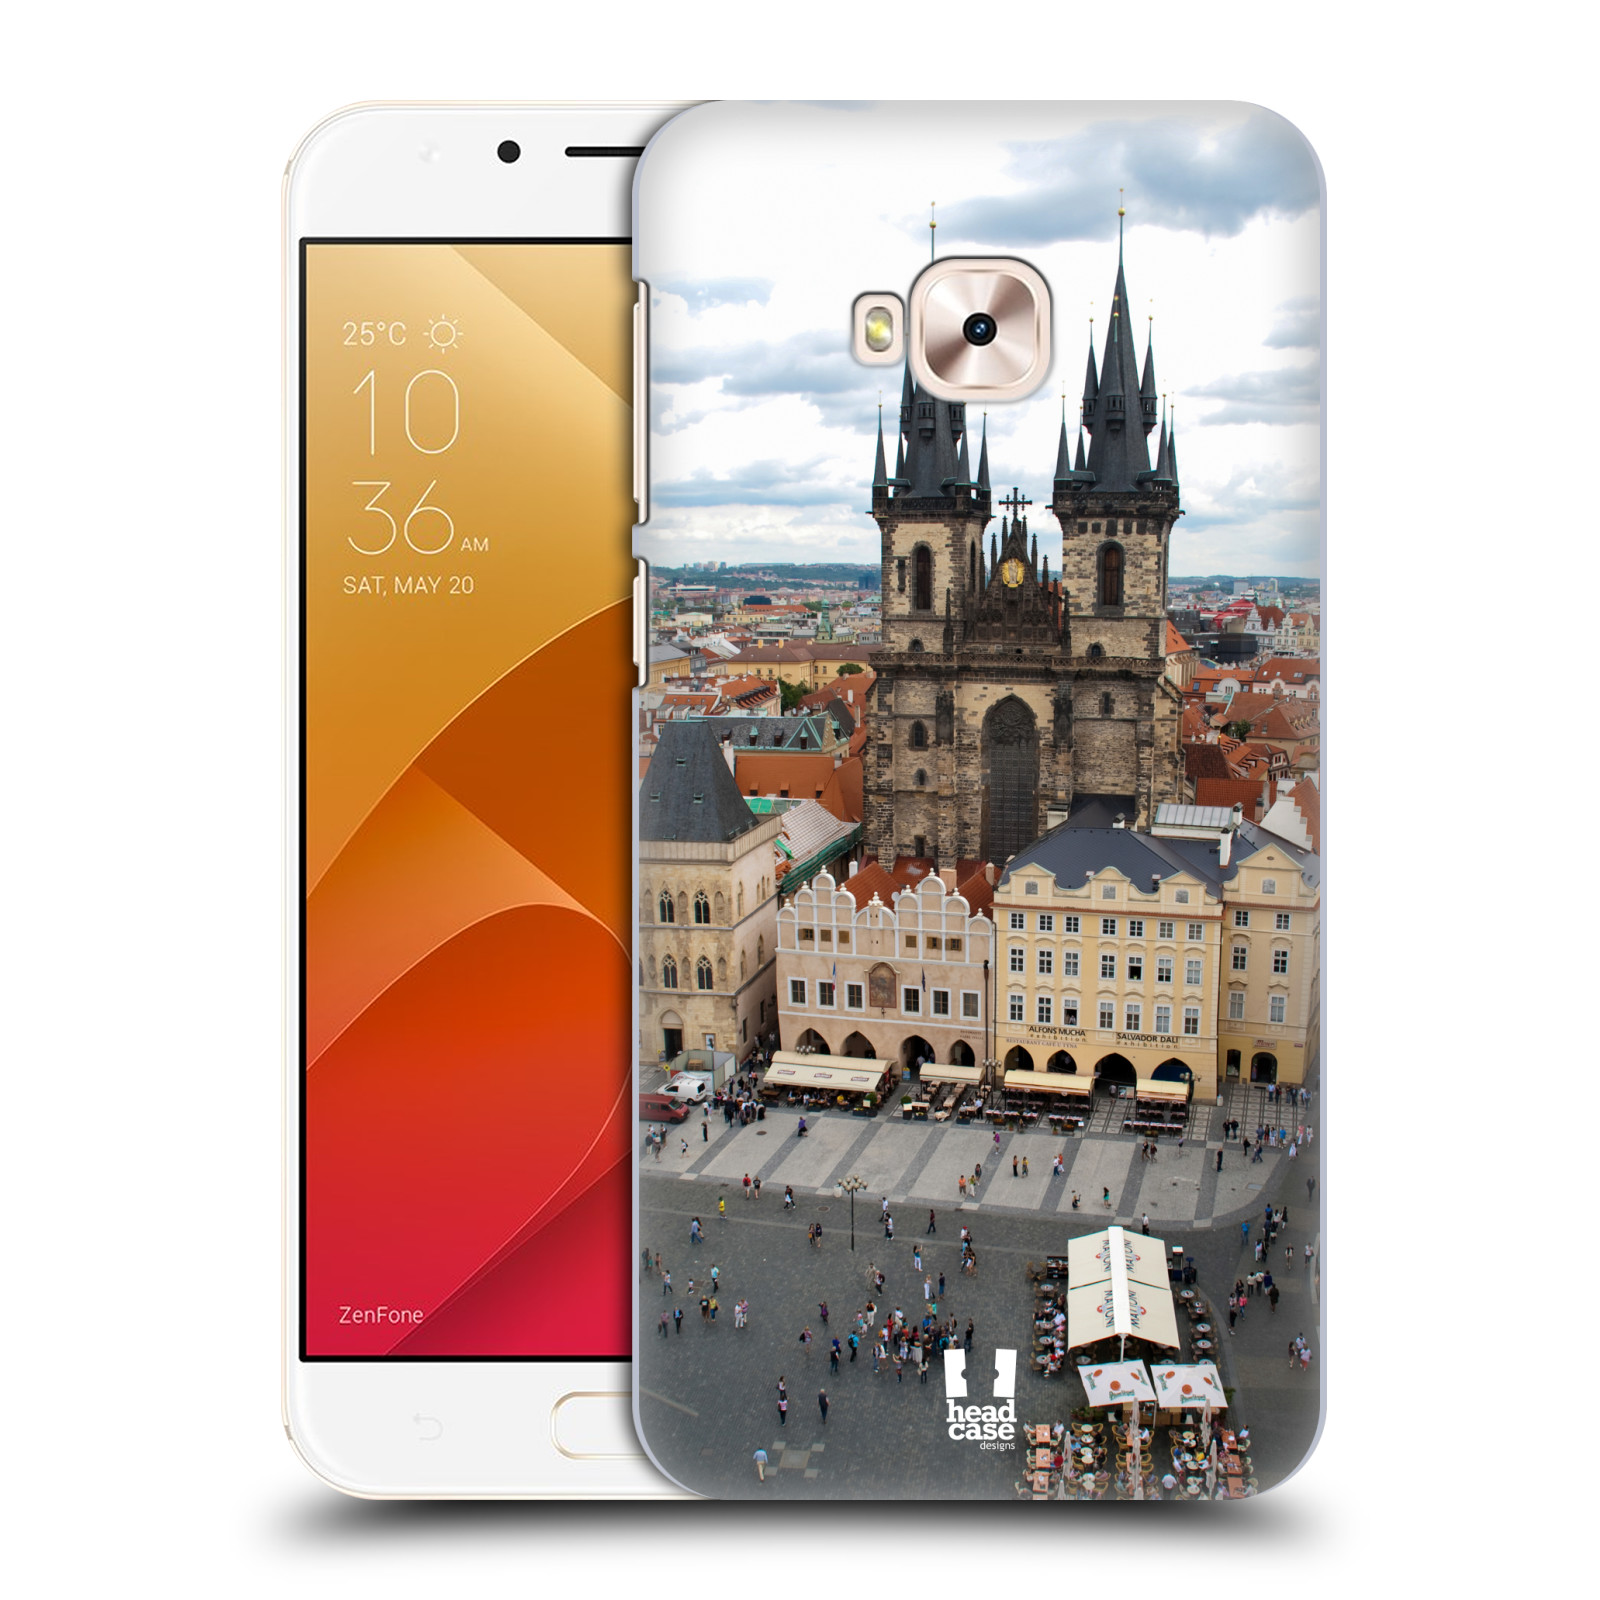 HEAD CASE plastový obal na mobil Asus Zenfone 4 Selfie Pro ZD552KL vzor Města foto náměstí ČESKÁ REPUBLIKA, PRAHA, STAROMĚSTSKÉ NÁMĚSTÍ